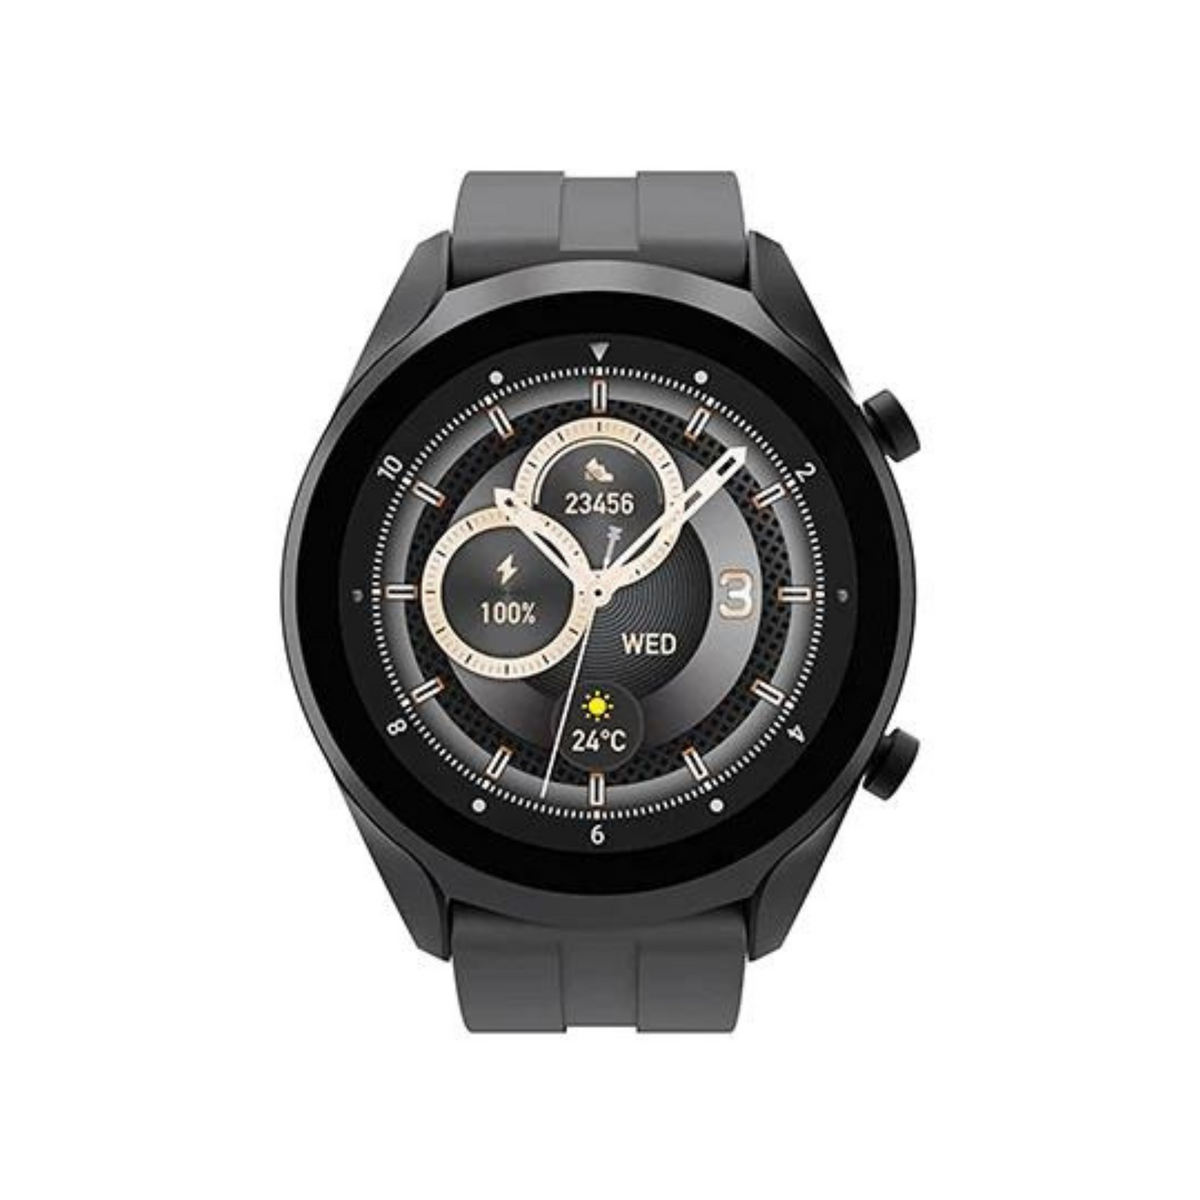 Heatz HW51 Wingo Smart Watch